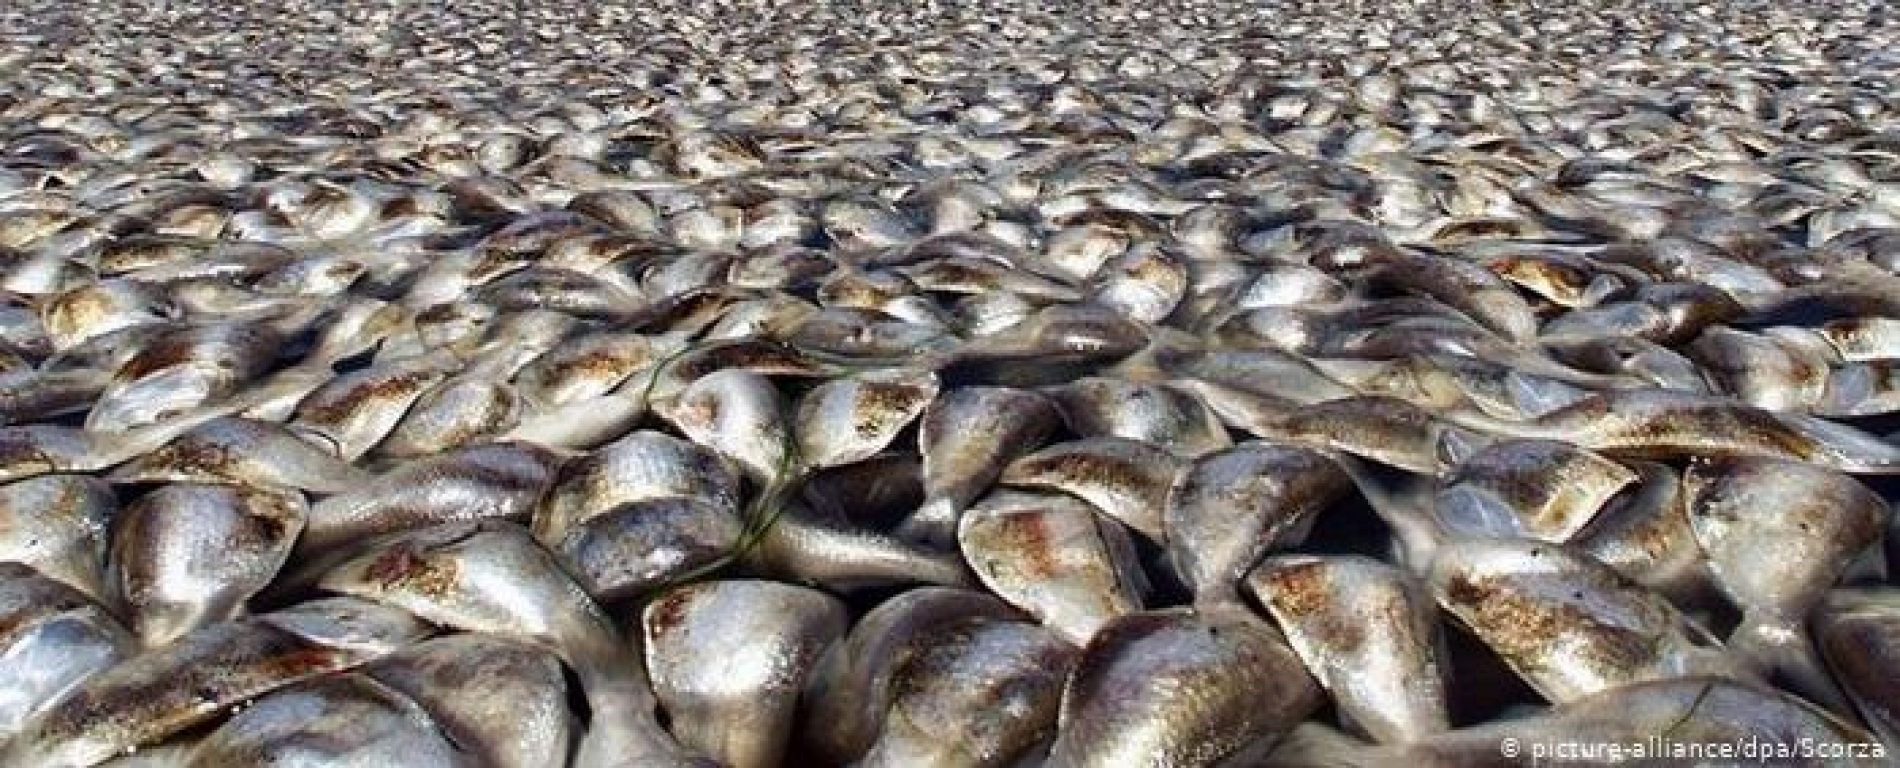 BARRETOS: Agricultor diz que falta de energia matou 300 quilos de peixes de seu viveiro